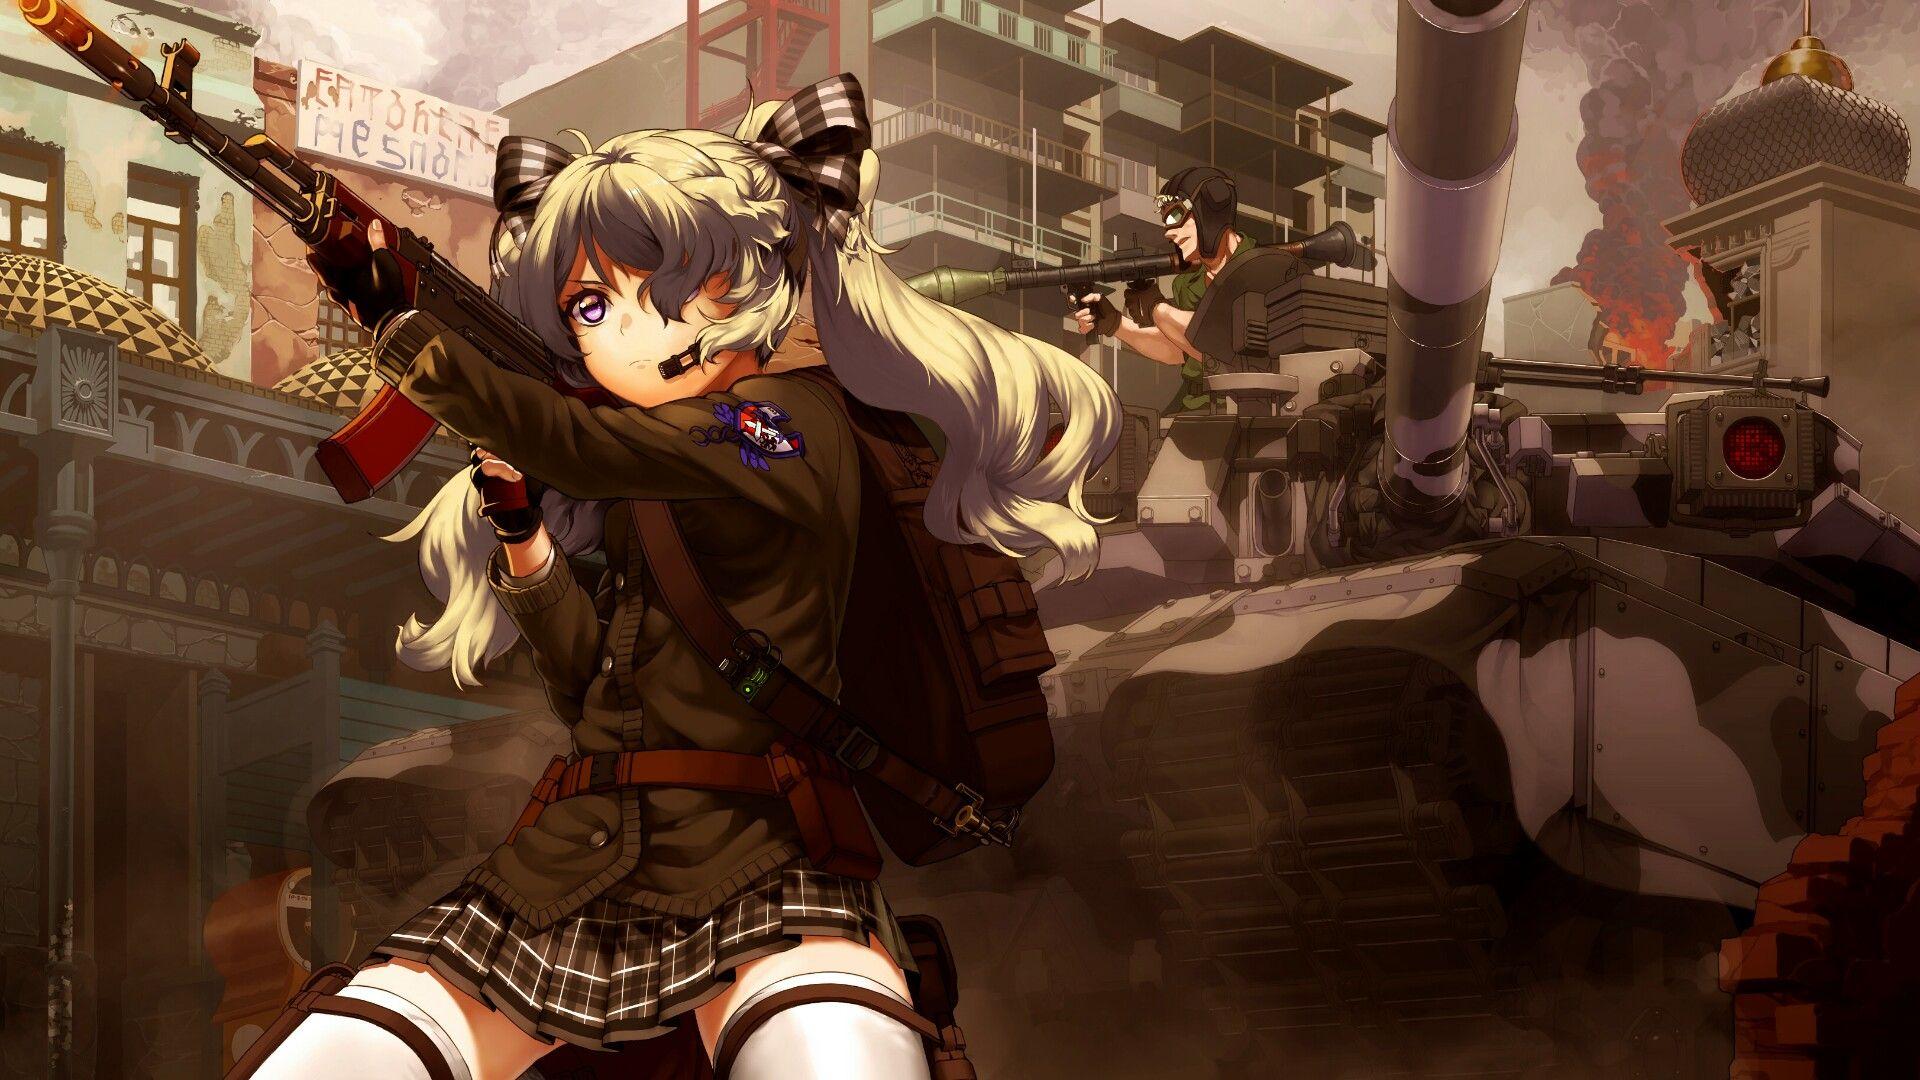 Anime girl with guns. Anime military